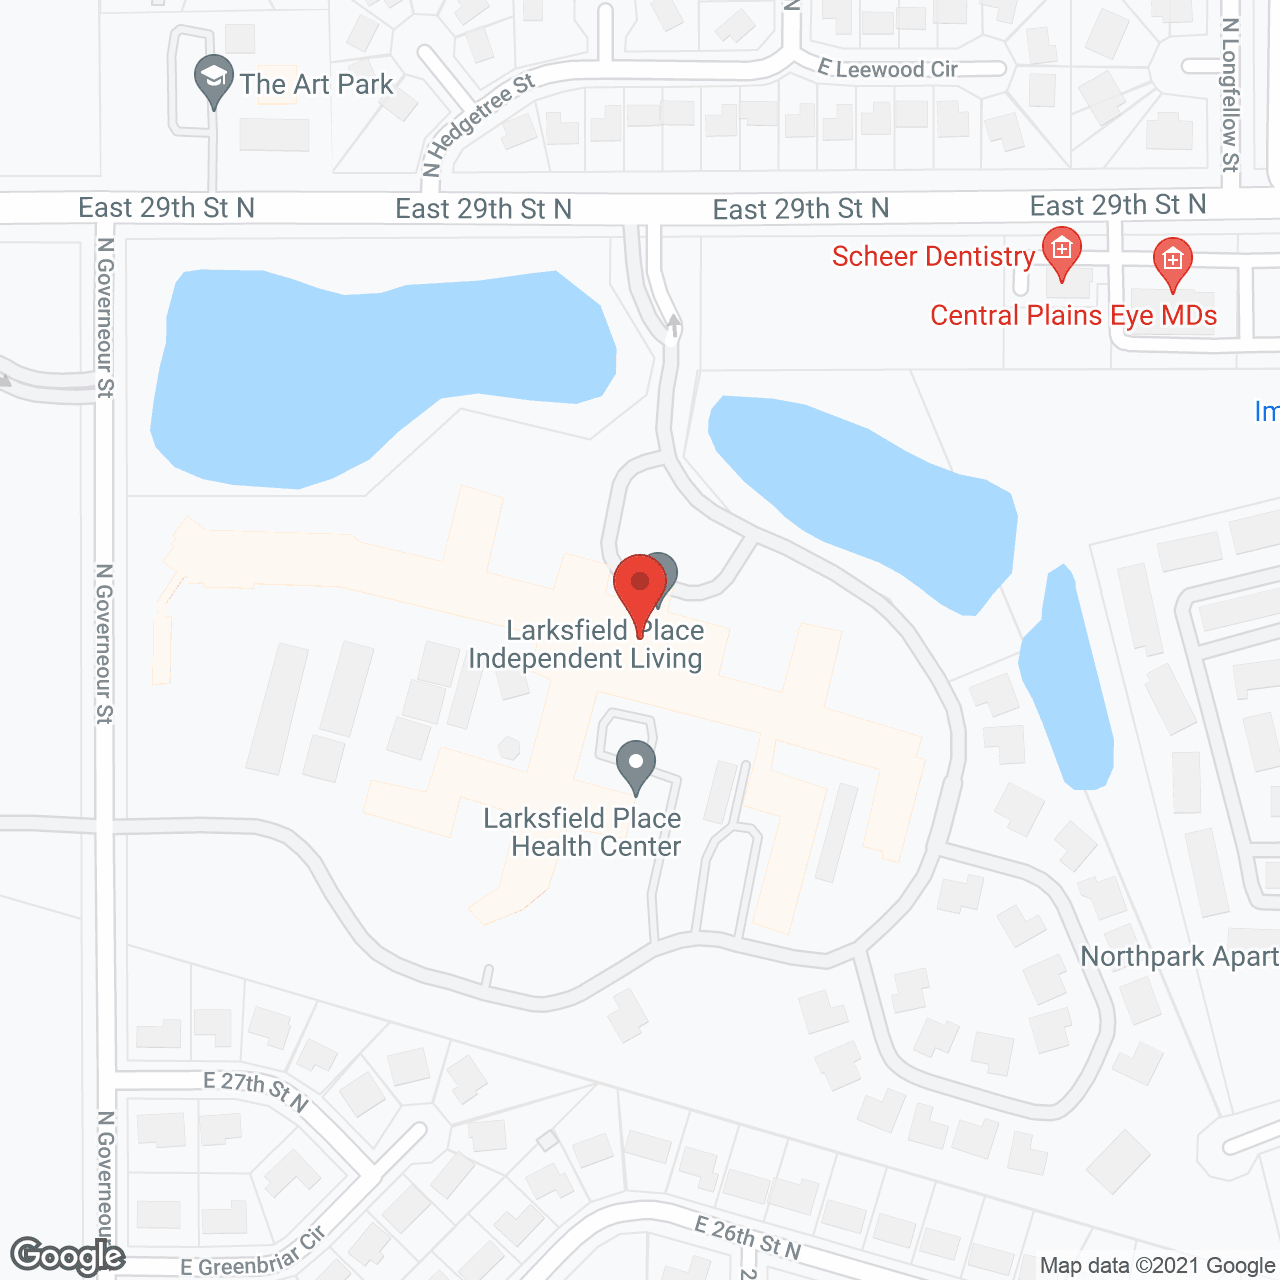 Larksfield Place in google map